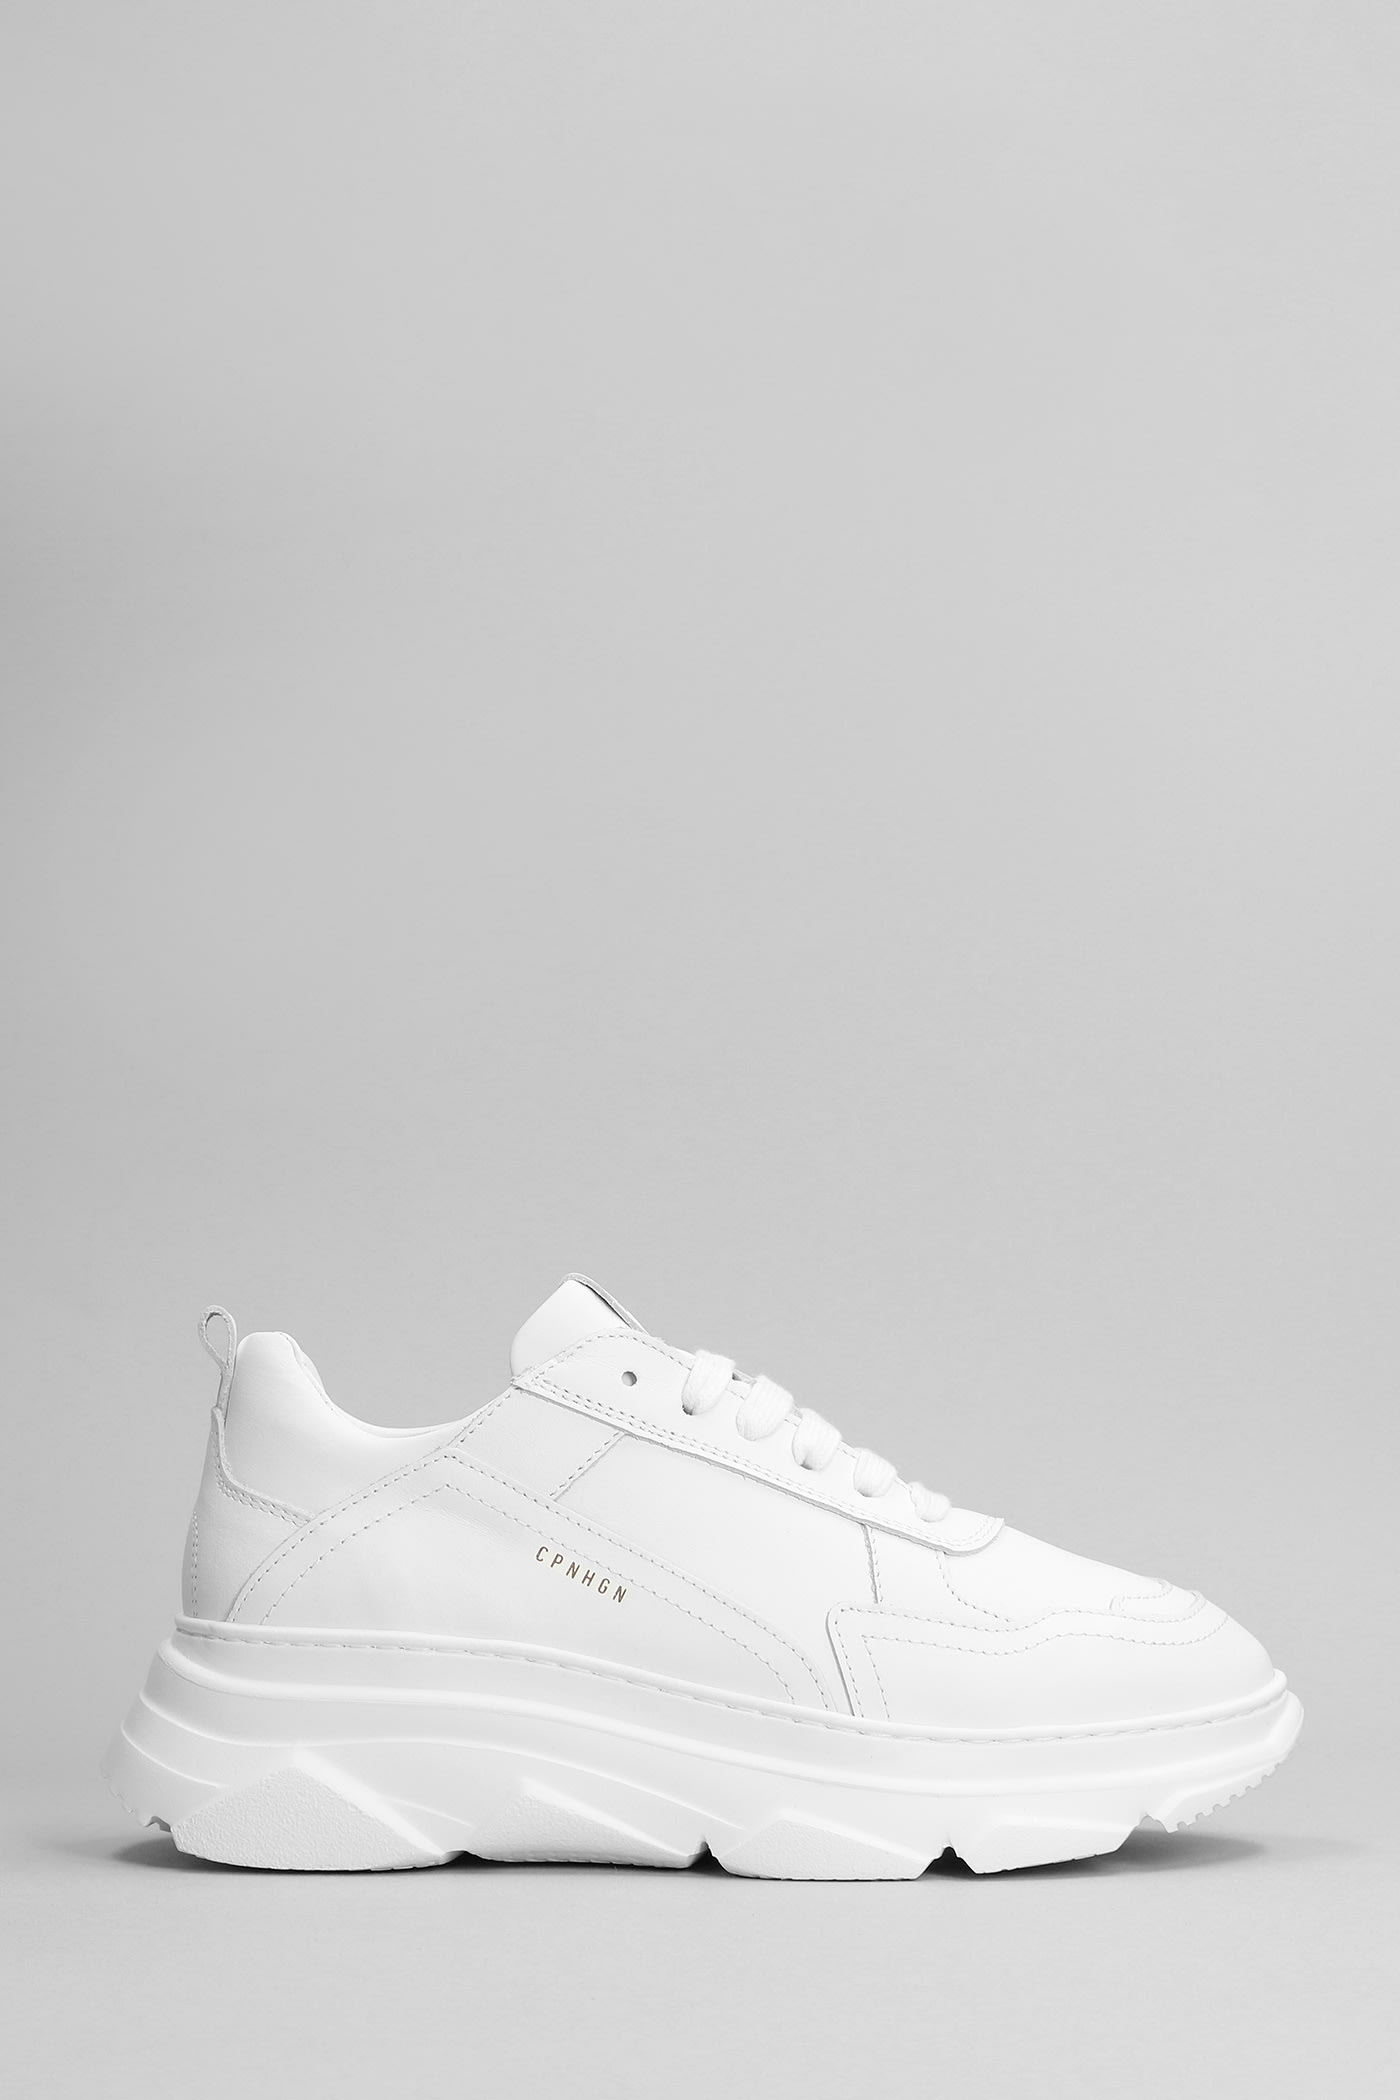 Copenhagen Sneakers In White Leather